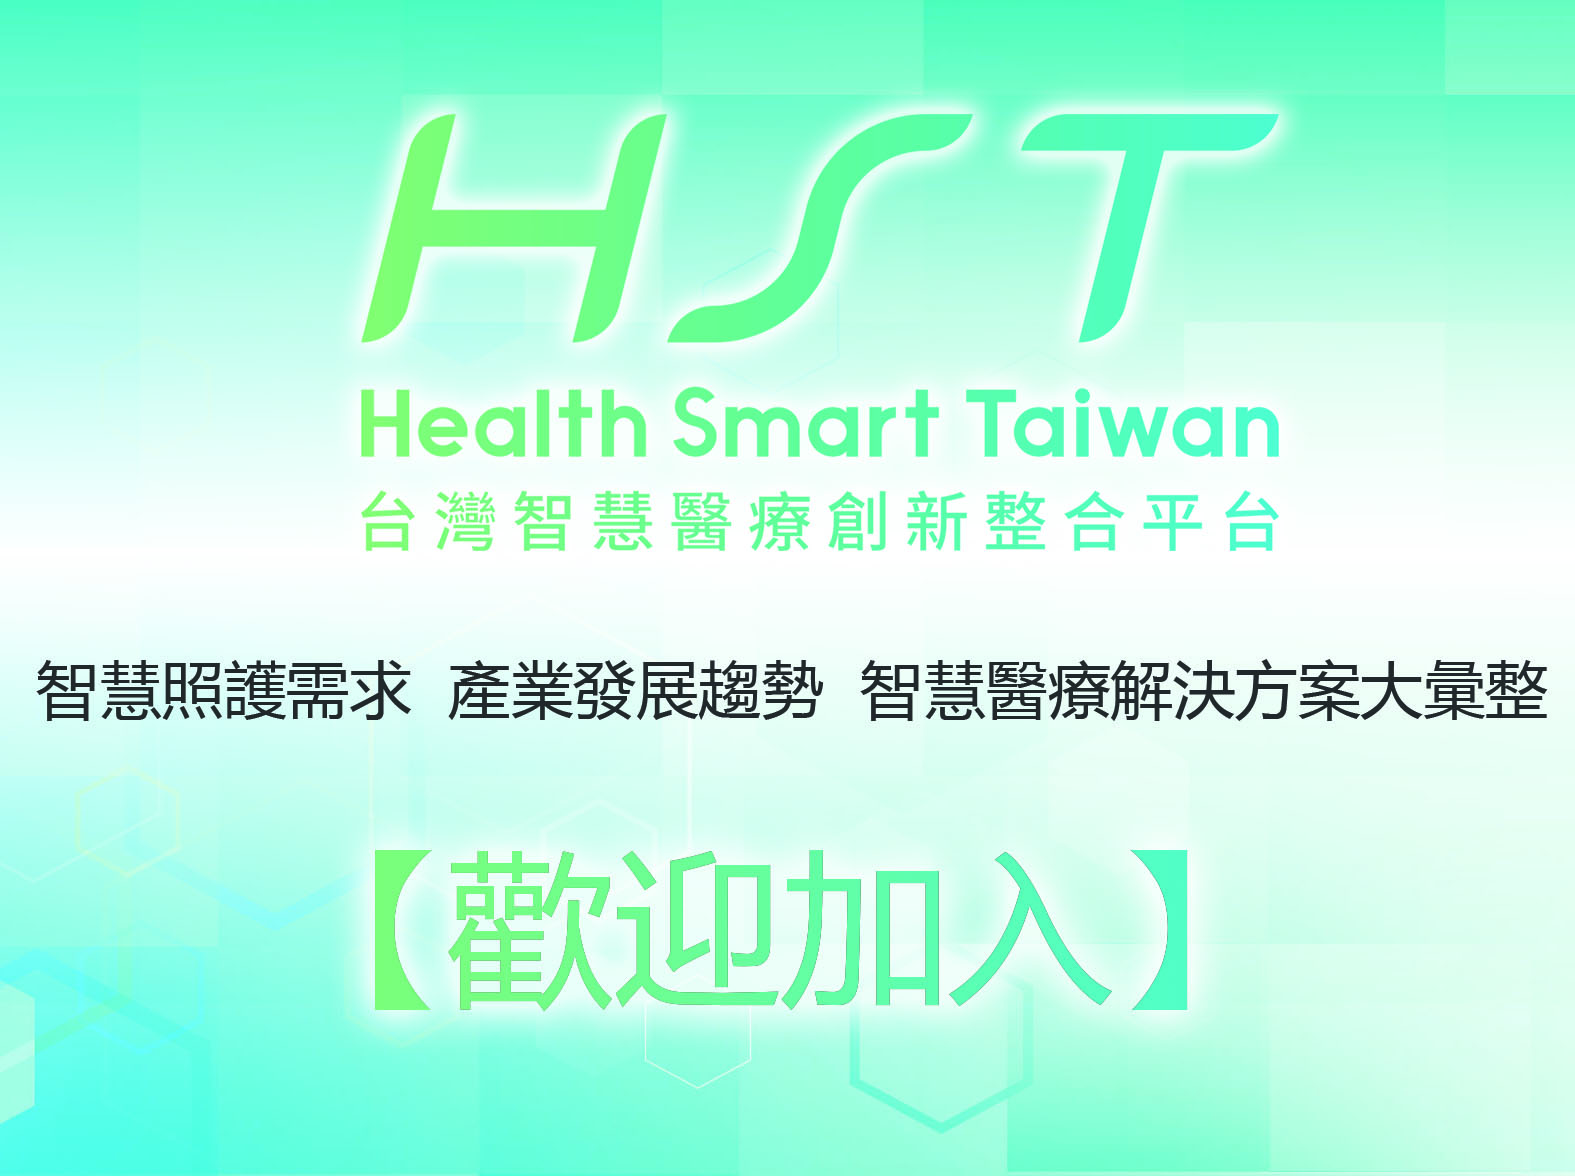 台灣智慧醫療創新整合平台HST